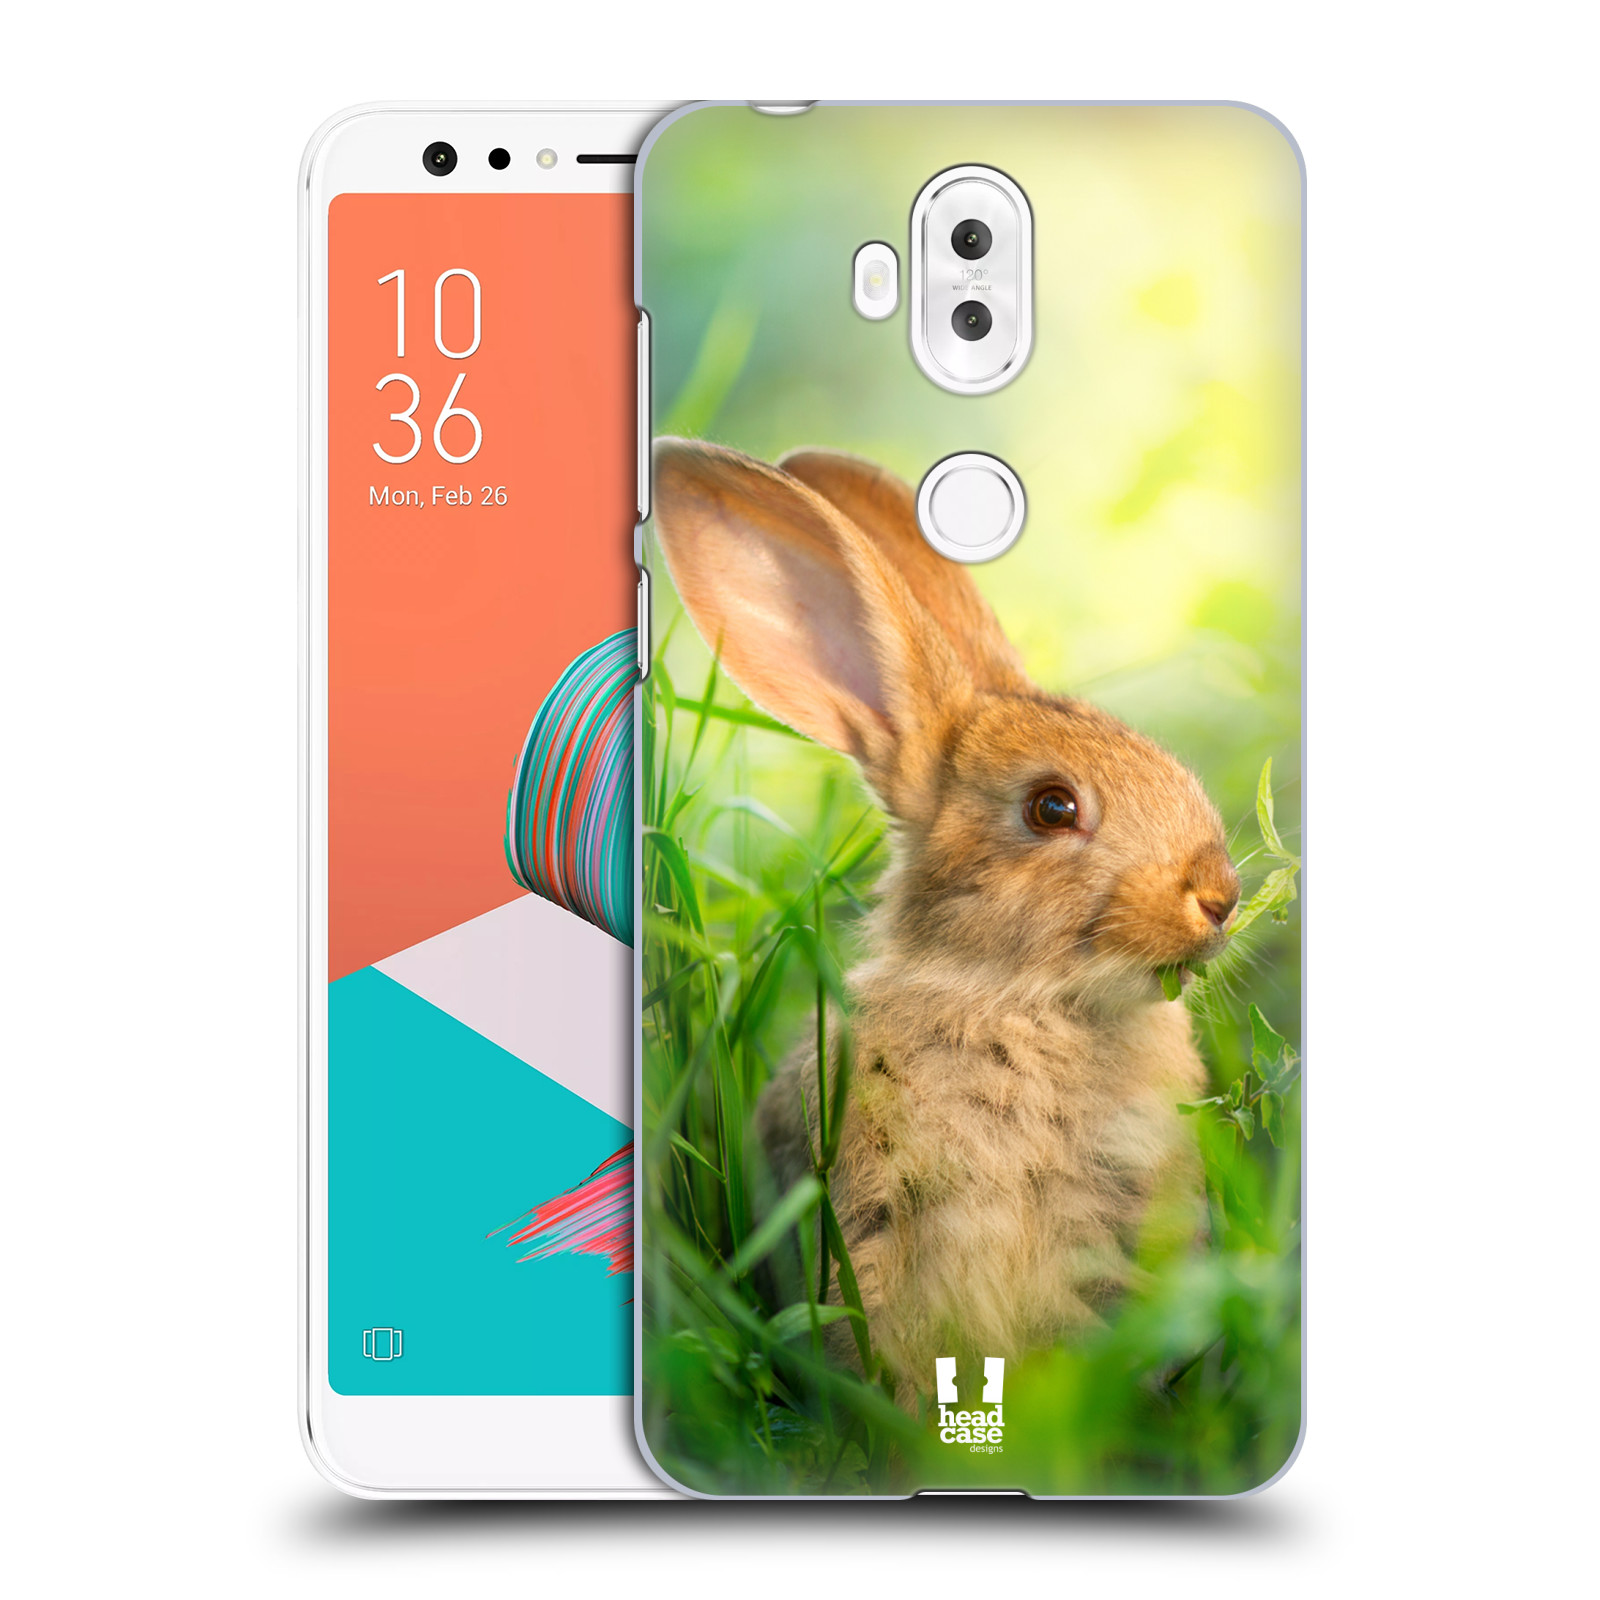 HEAD CASE plastový obal na mobil Asus Zenfone 5 LITE ZC600KL vzor Divočina, Divoký život a zvířata foto ZAJÍČEK V TRÁVĚ ZELENÁ